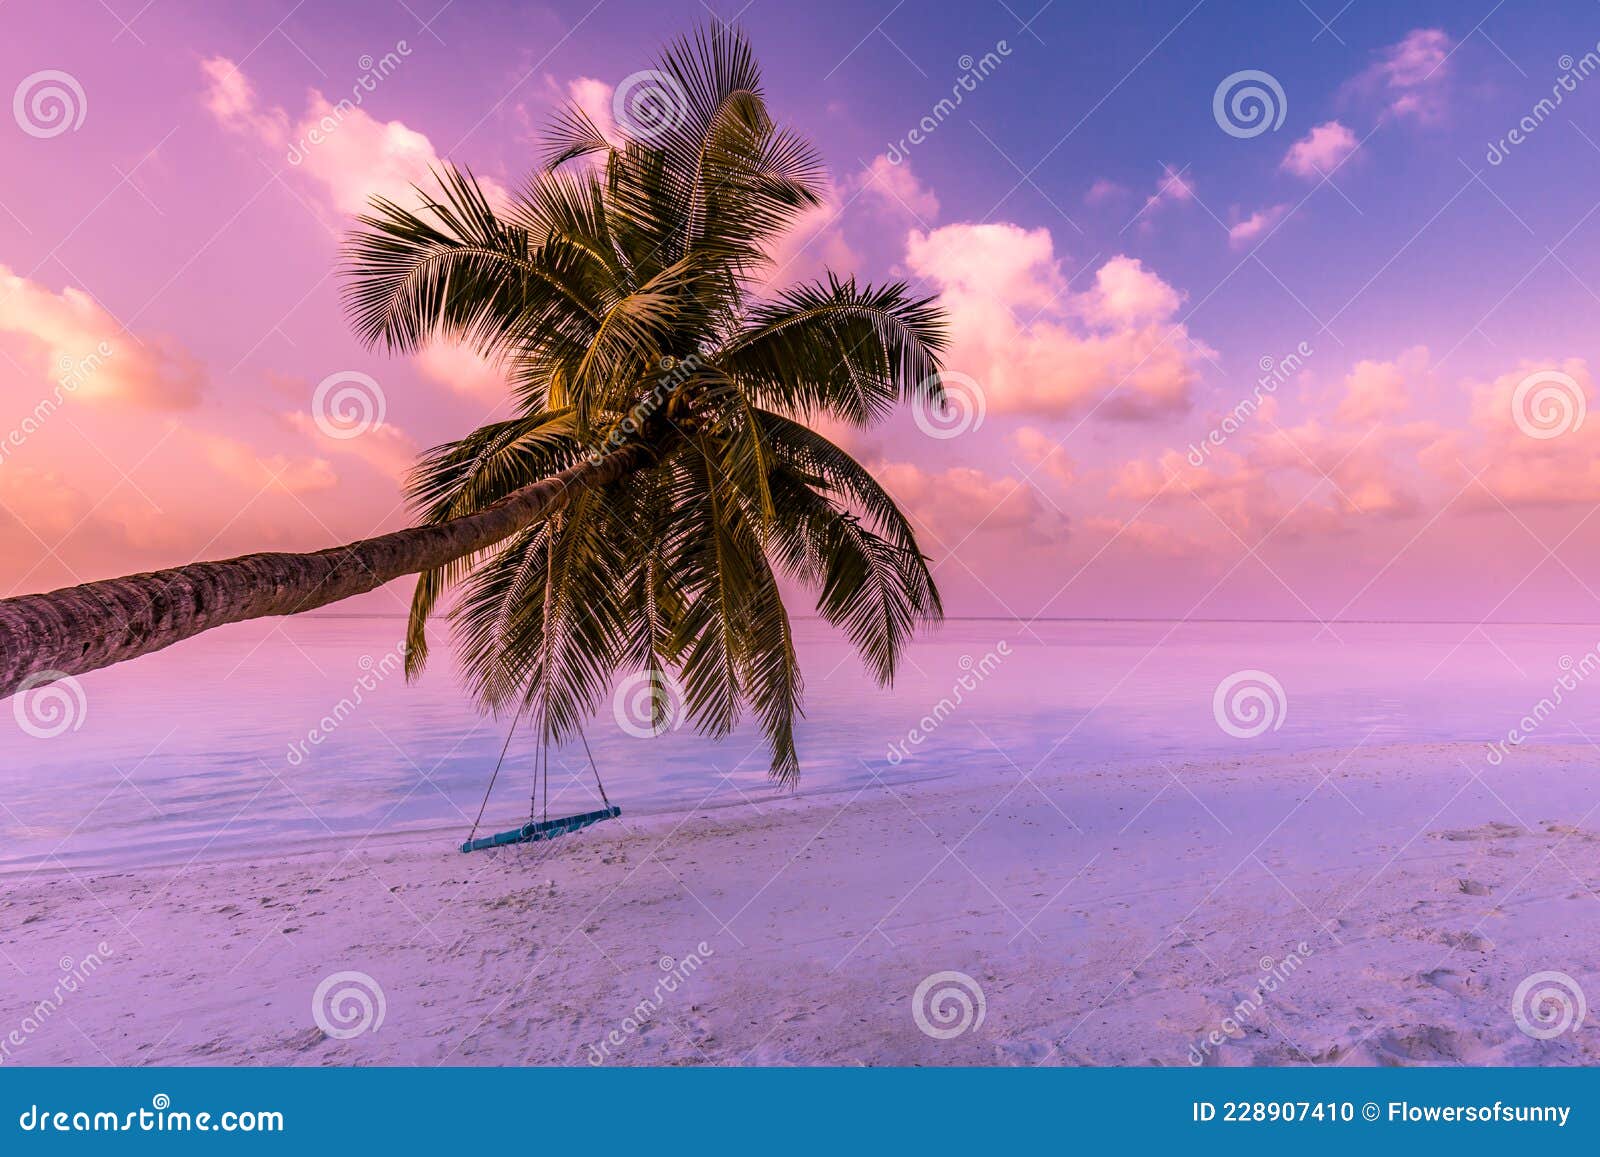 Hình nền Tropical Sunset Beach Landscape thật đặc biệt với dải nắng vàng rực rỡ lung linh trên bầu trời hoàng hôn. Bạn sẽ cảm nhận được sự yên bình và thư thái tột độ khi để mắt nhìn vào hình ảnh này.